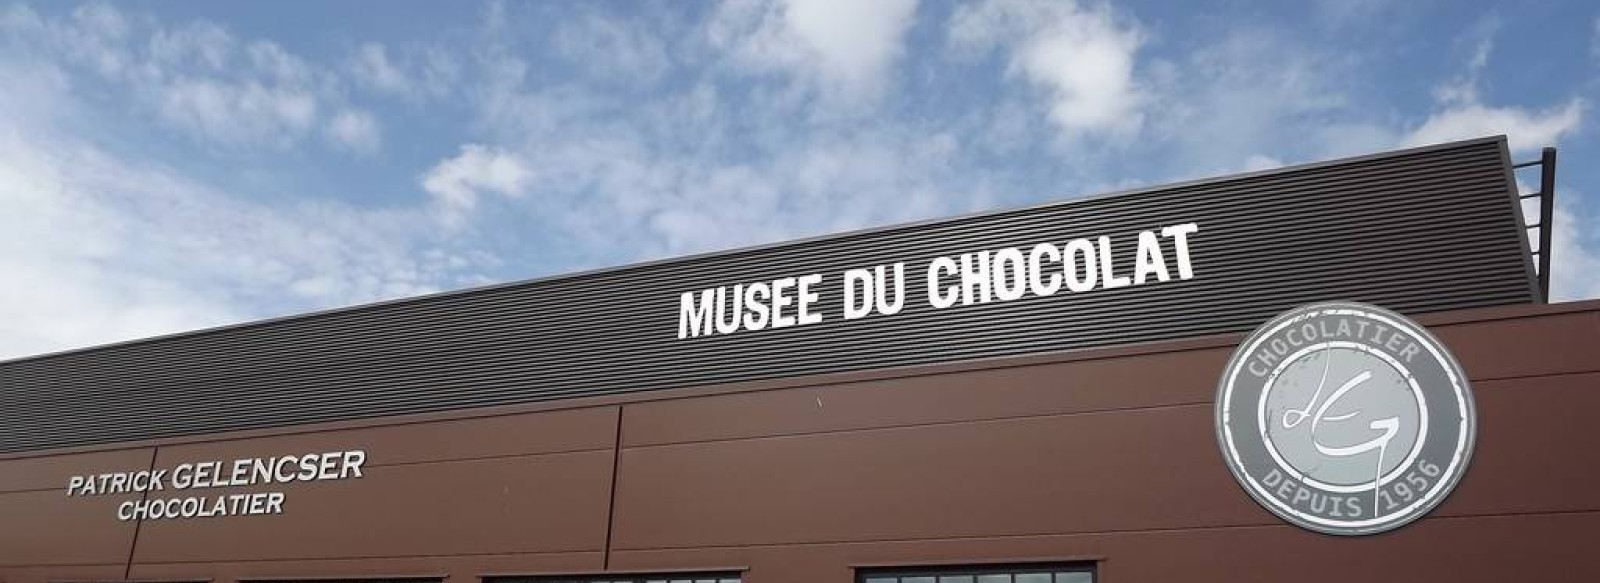 MUSEE DU CHOCOLAT